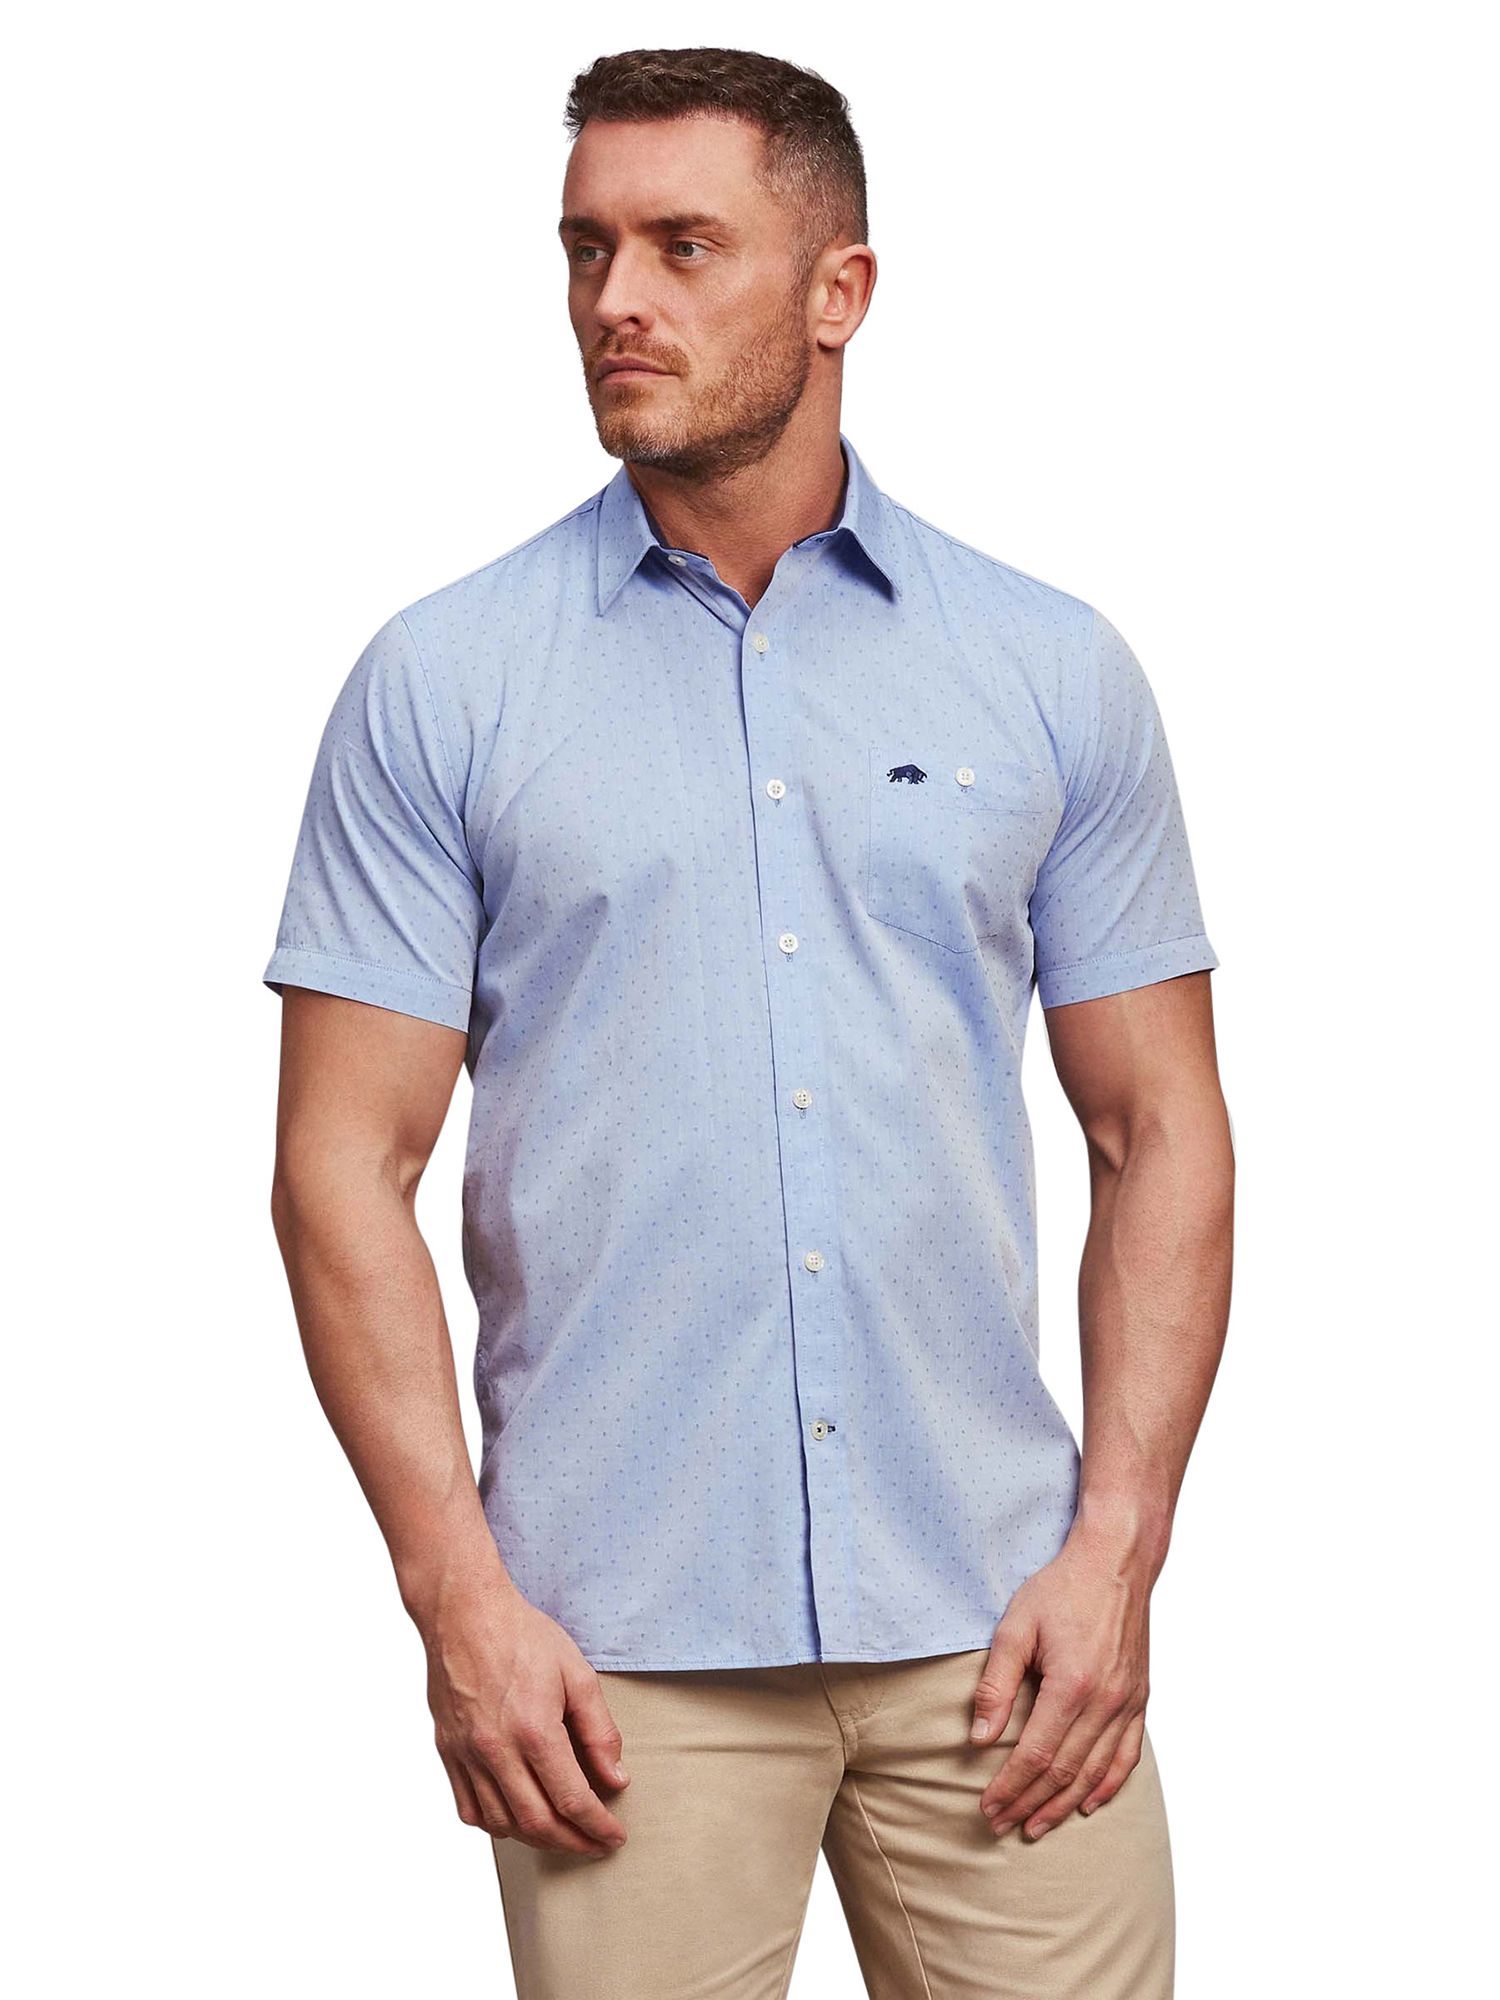 Raging Bull Short Sleeve Dobby Shirt, Blue, S